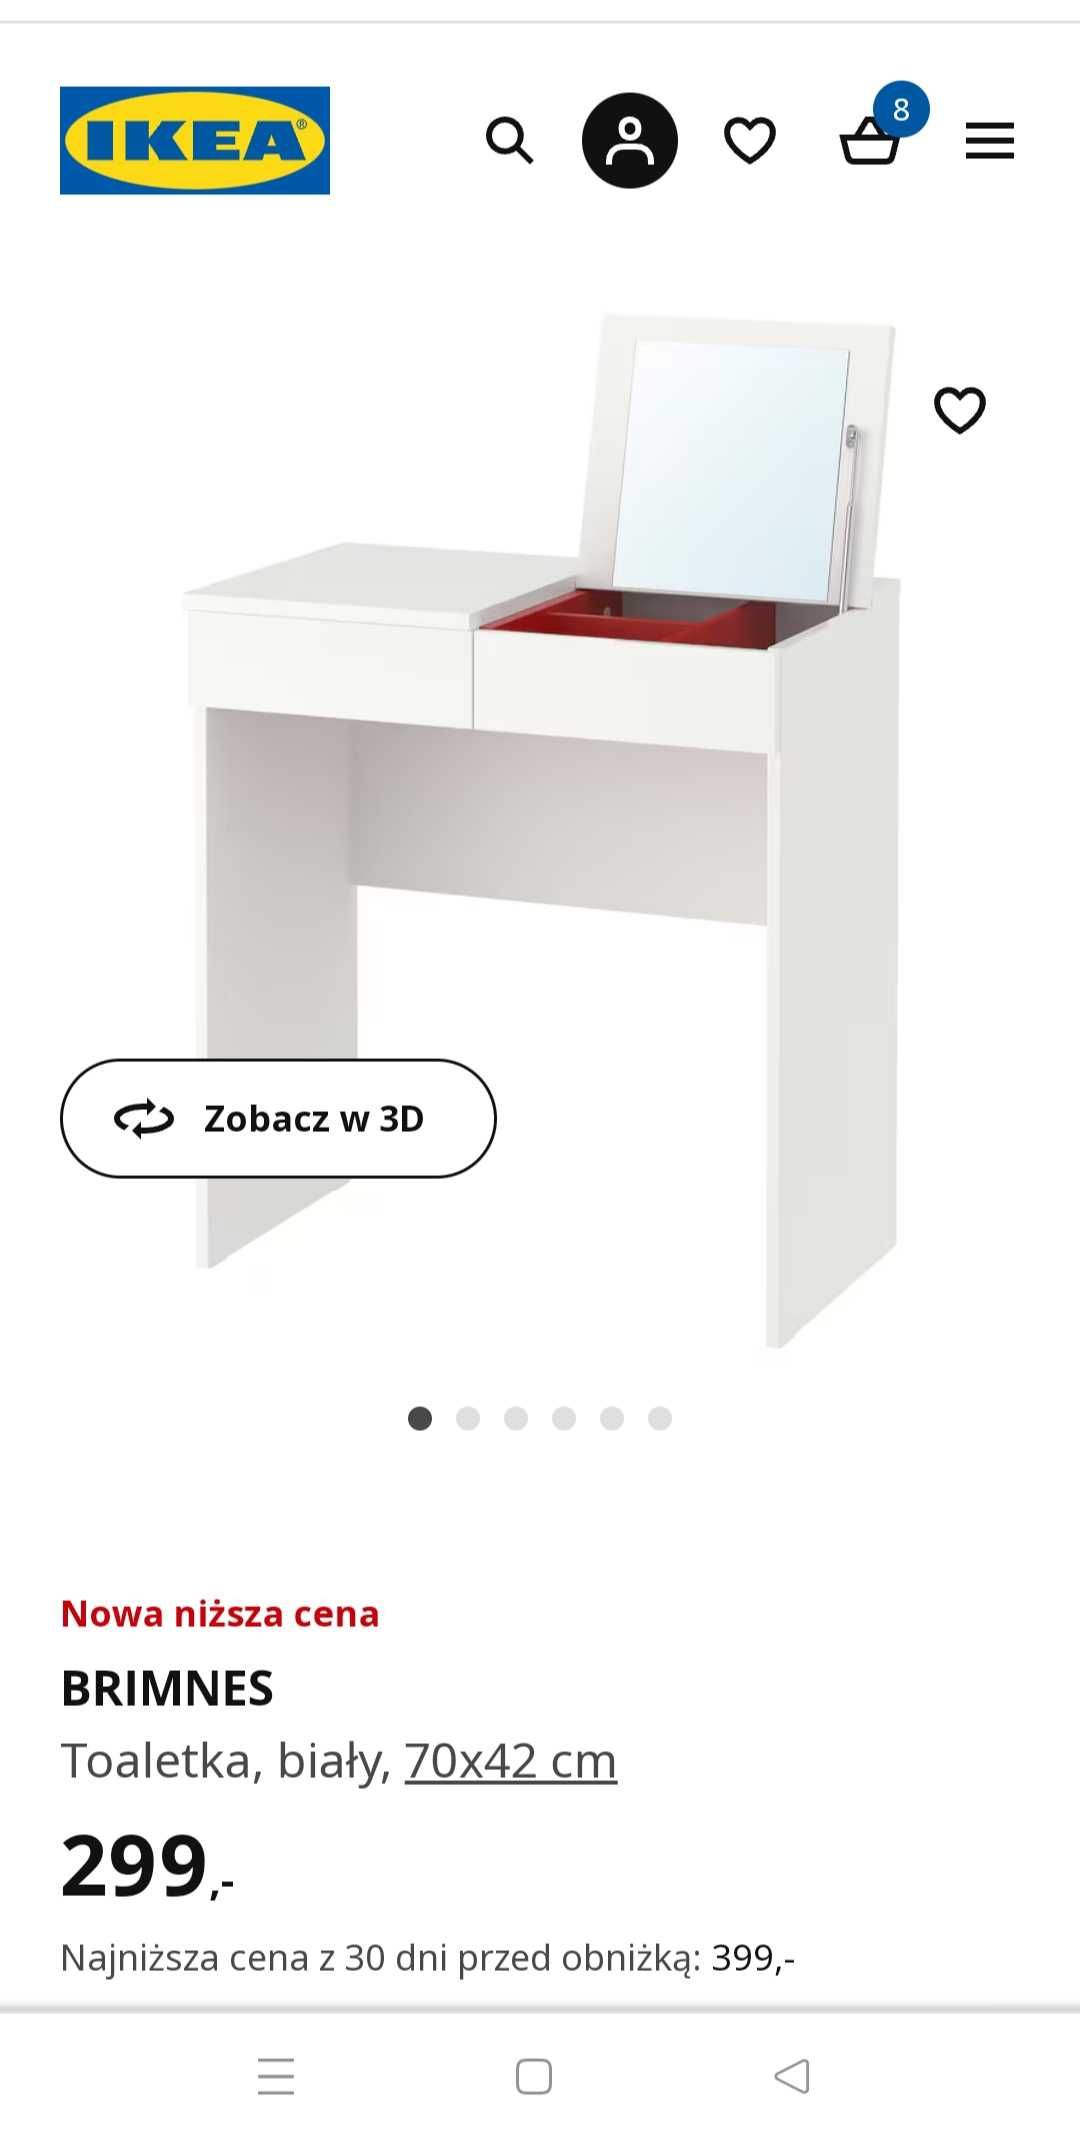 Toaletka Ikea biała